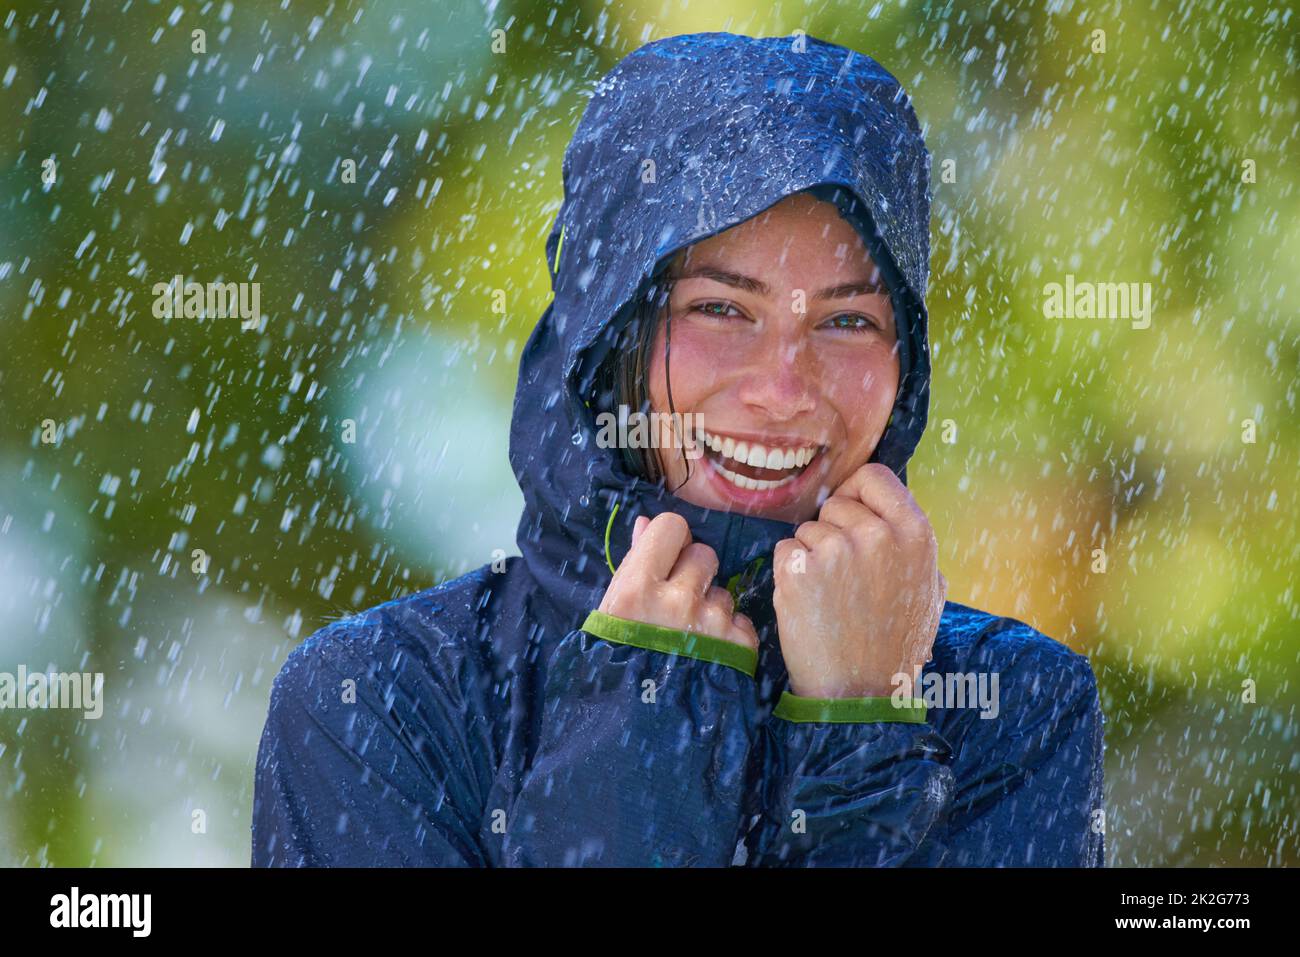 Elle aime la pluie. Photo courte d'une jeune femme debout avec joie sous la pluie. Banque D'Images